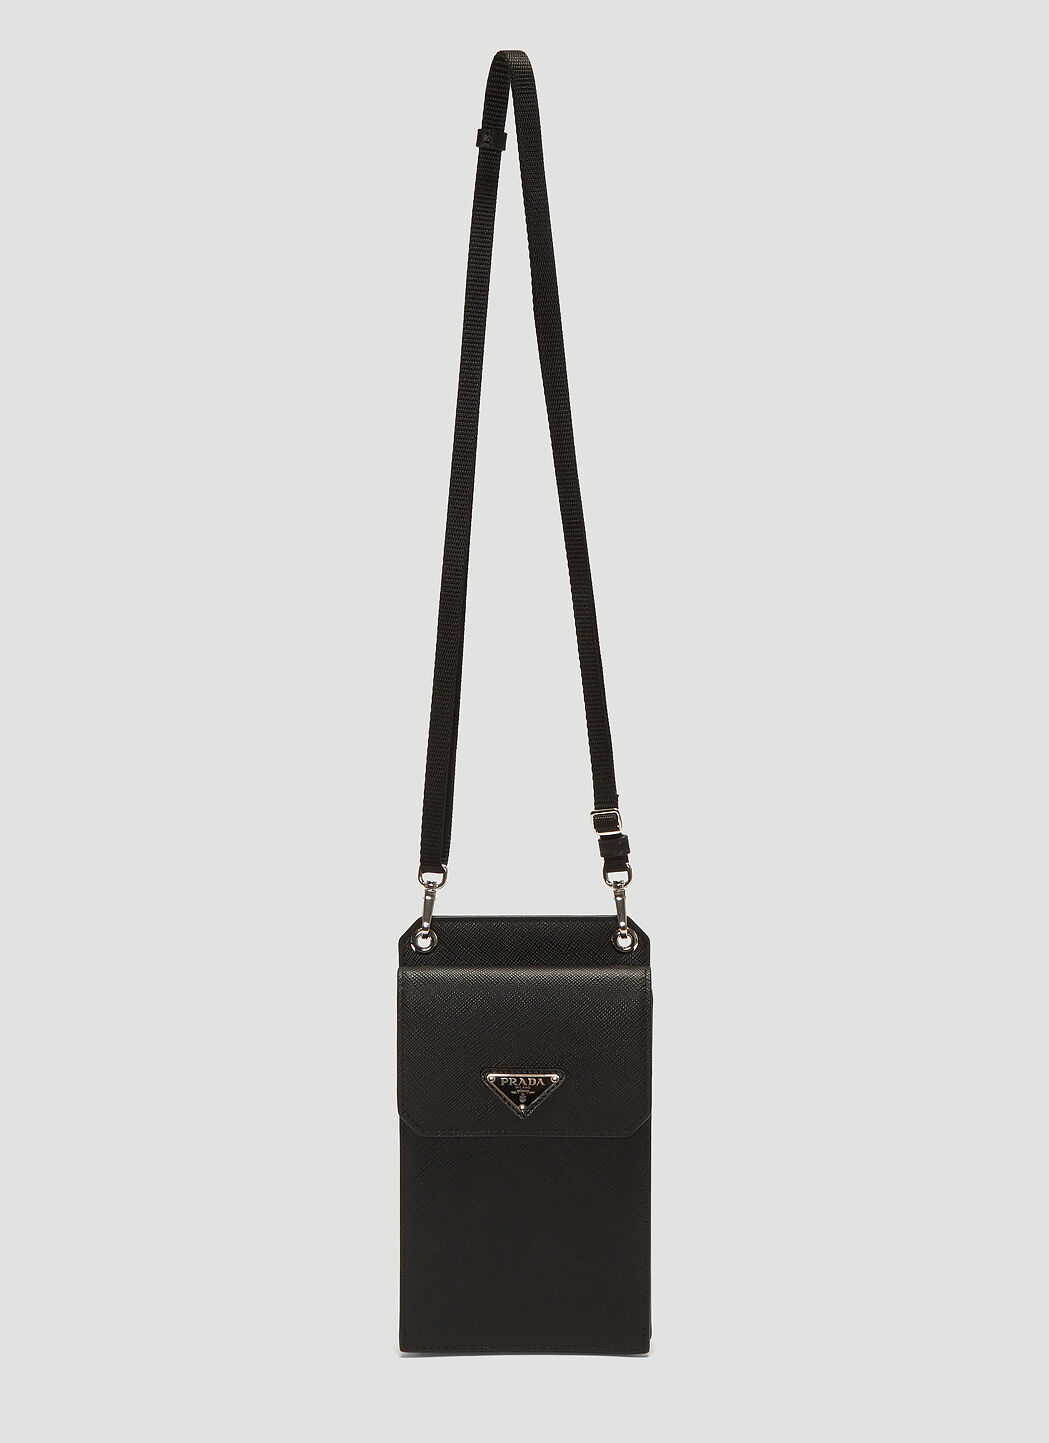 Saint Laurent Saffiano Leather Phone Case Black sla0136039